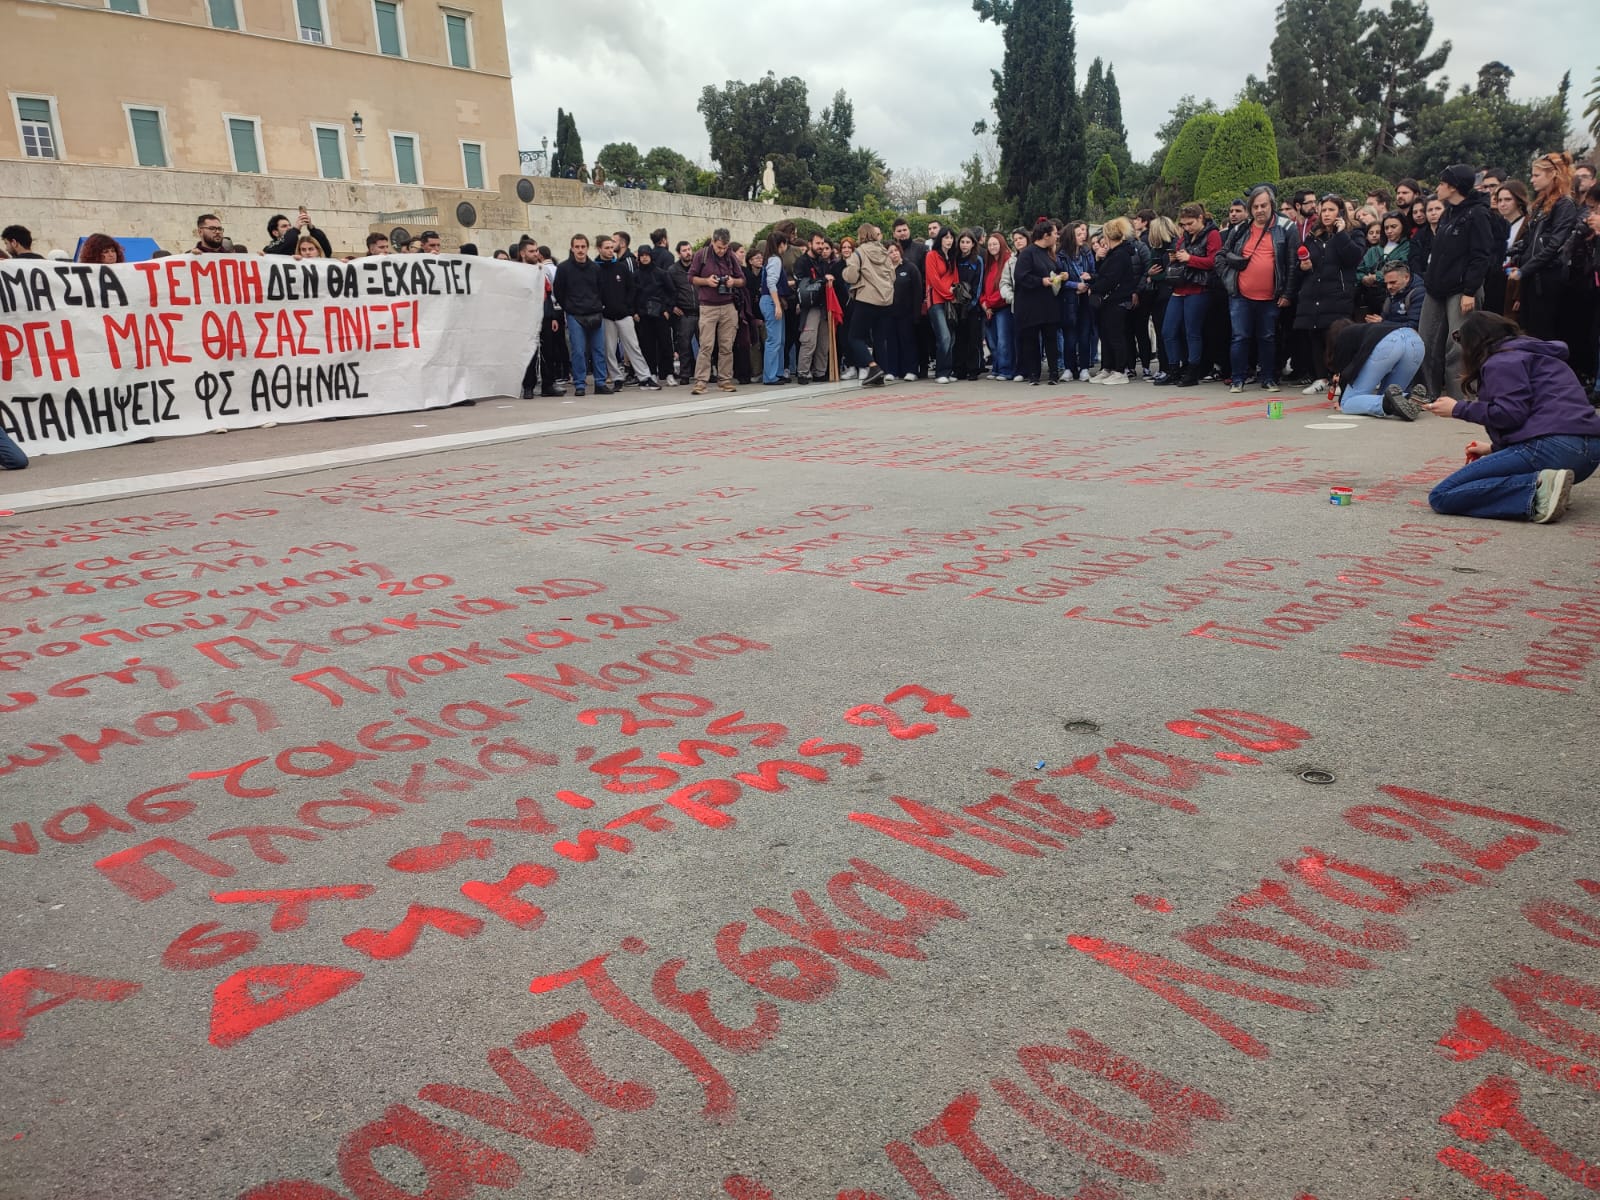 Τέμπη: Έγραψαν με κόκκινη μπογιά τα ονόματα των θυμάτων μπροστά από τον Άγνωστο Στρατιώτη